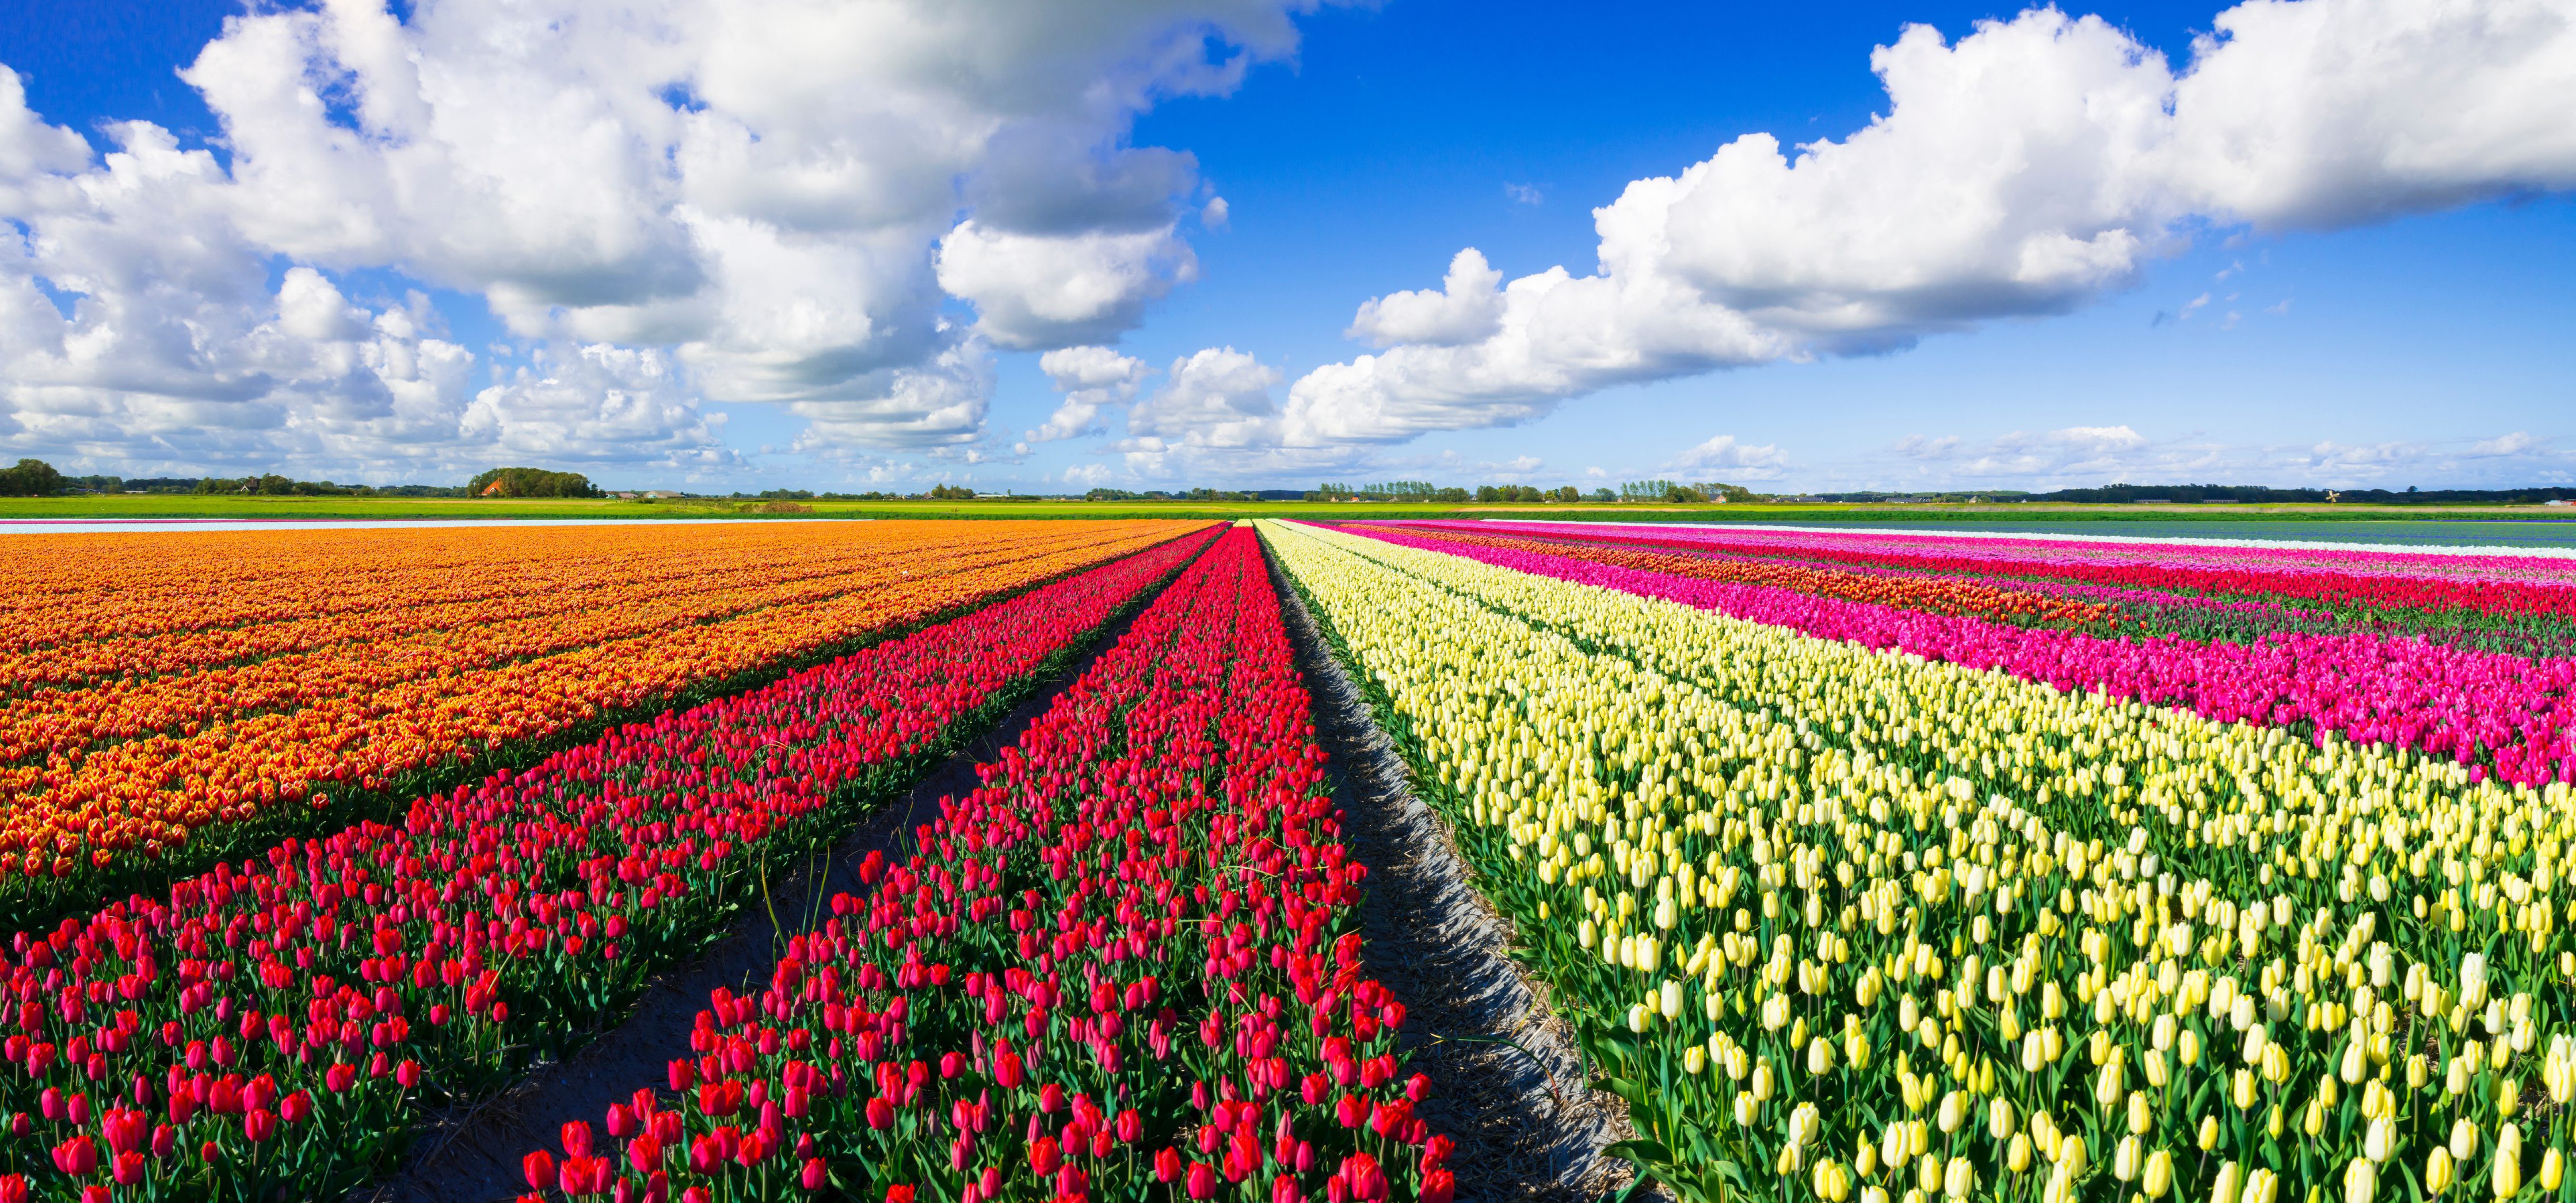 Multicolored tulip field under a nice clouded sky